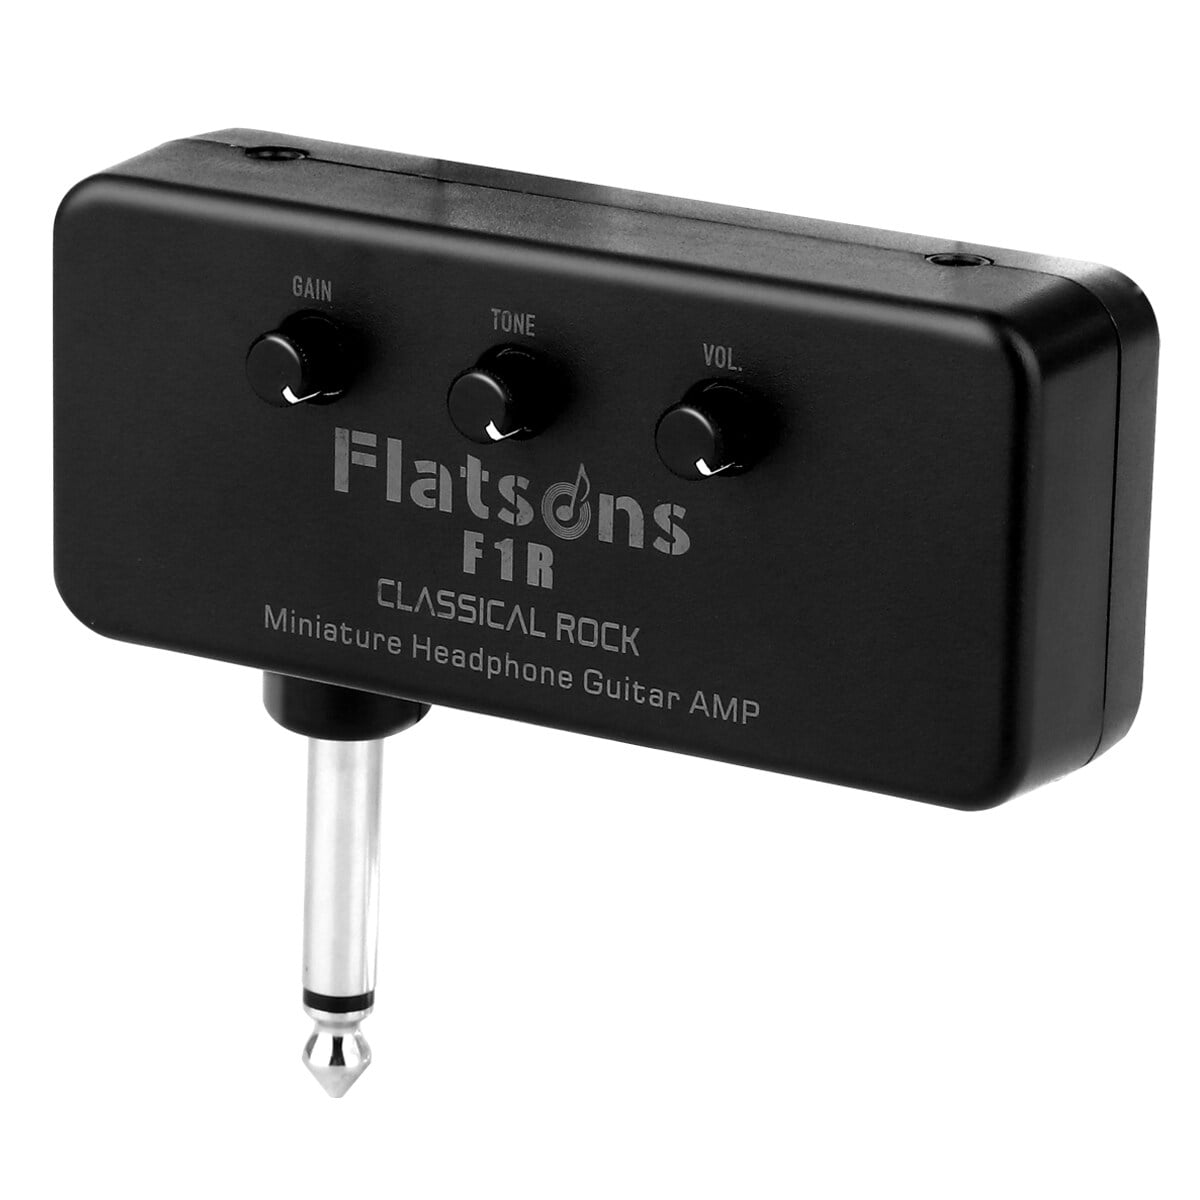 Flatsons F1R Mini amplificateur d'ampli de guitare pour casque avec prise  casque 3,5 mm entrée AUX Plug-and-Play 